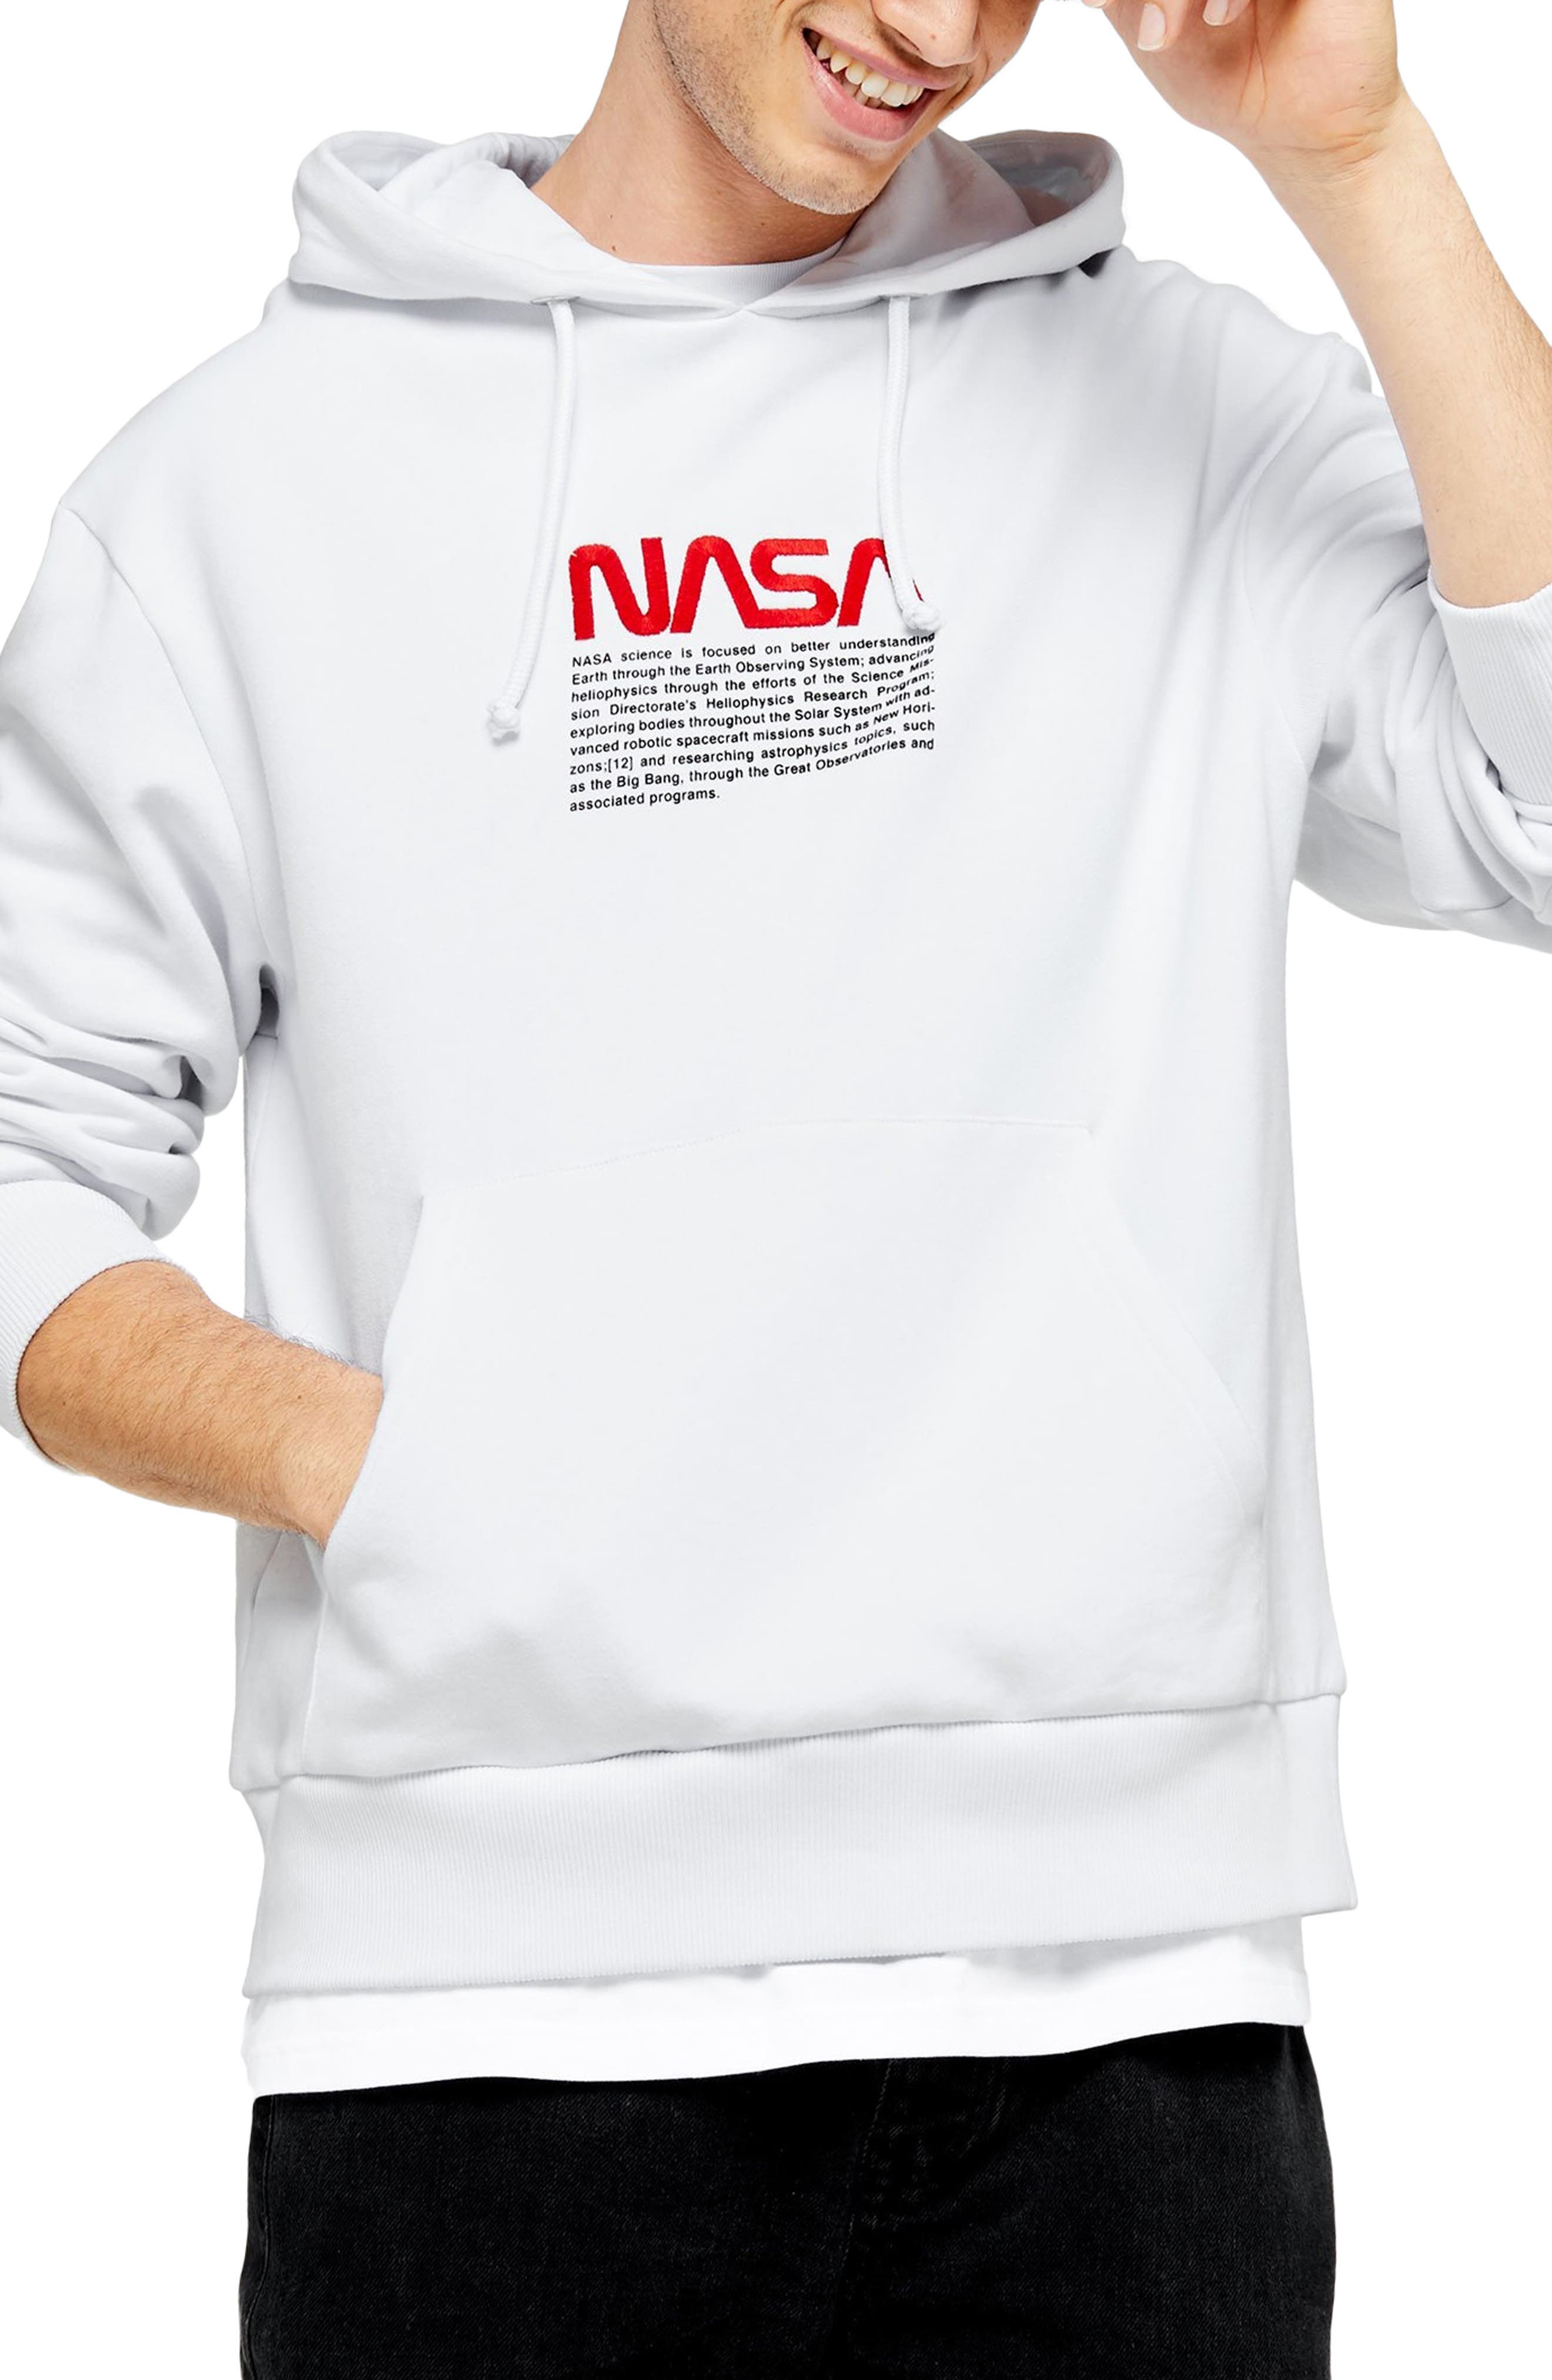 nasa sweatshirts for sale